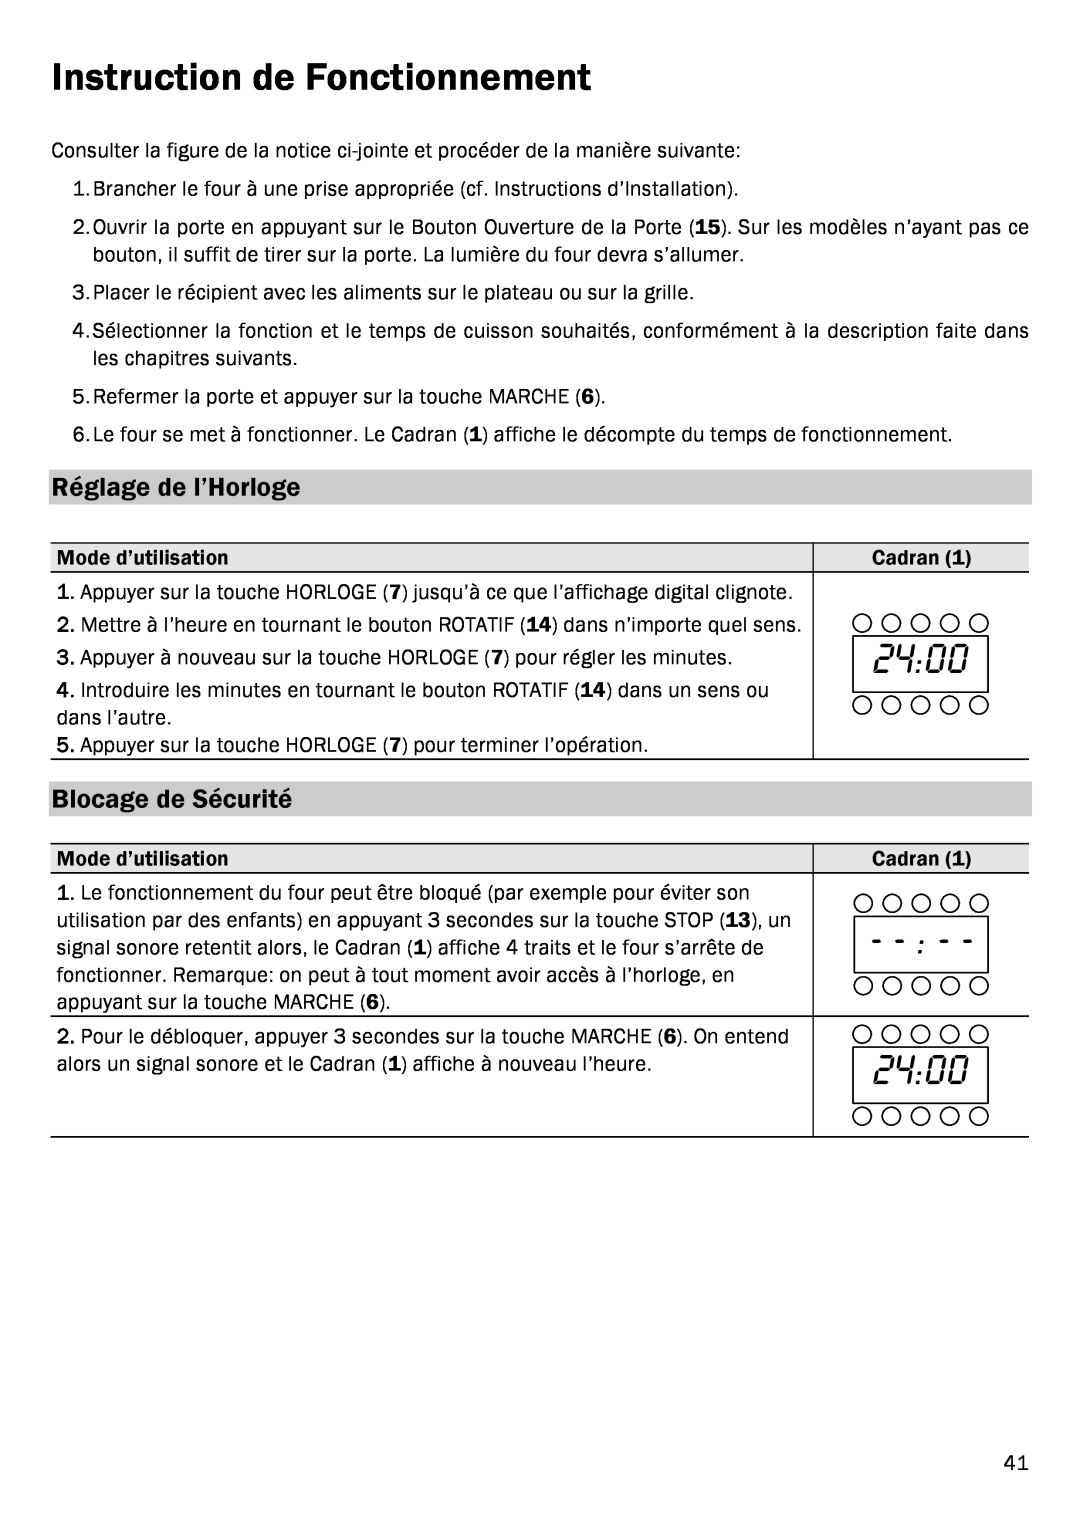 Smeg FME20EX1 manual Instruction de Fonctionnement, Réglage de l’Horloge, Blocage de Sécurité, 2400 